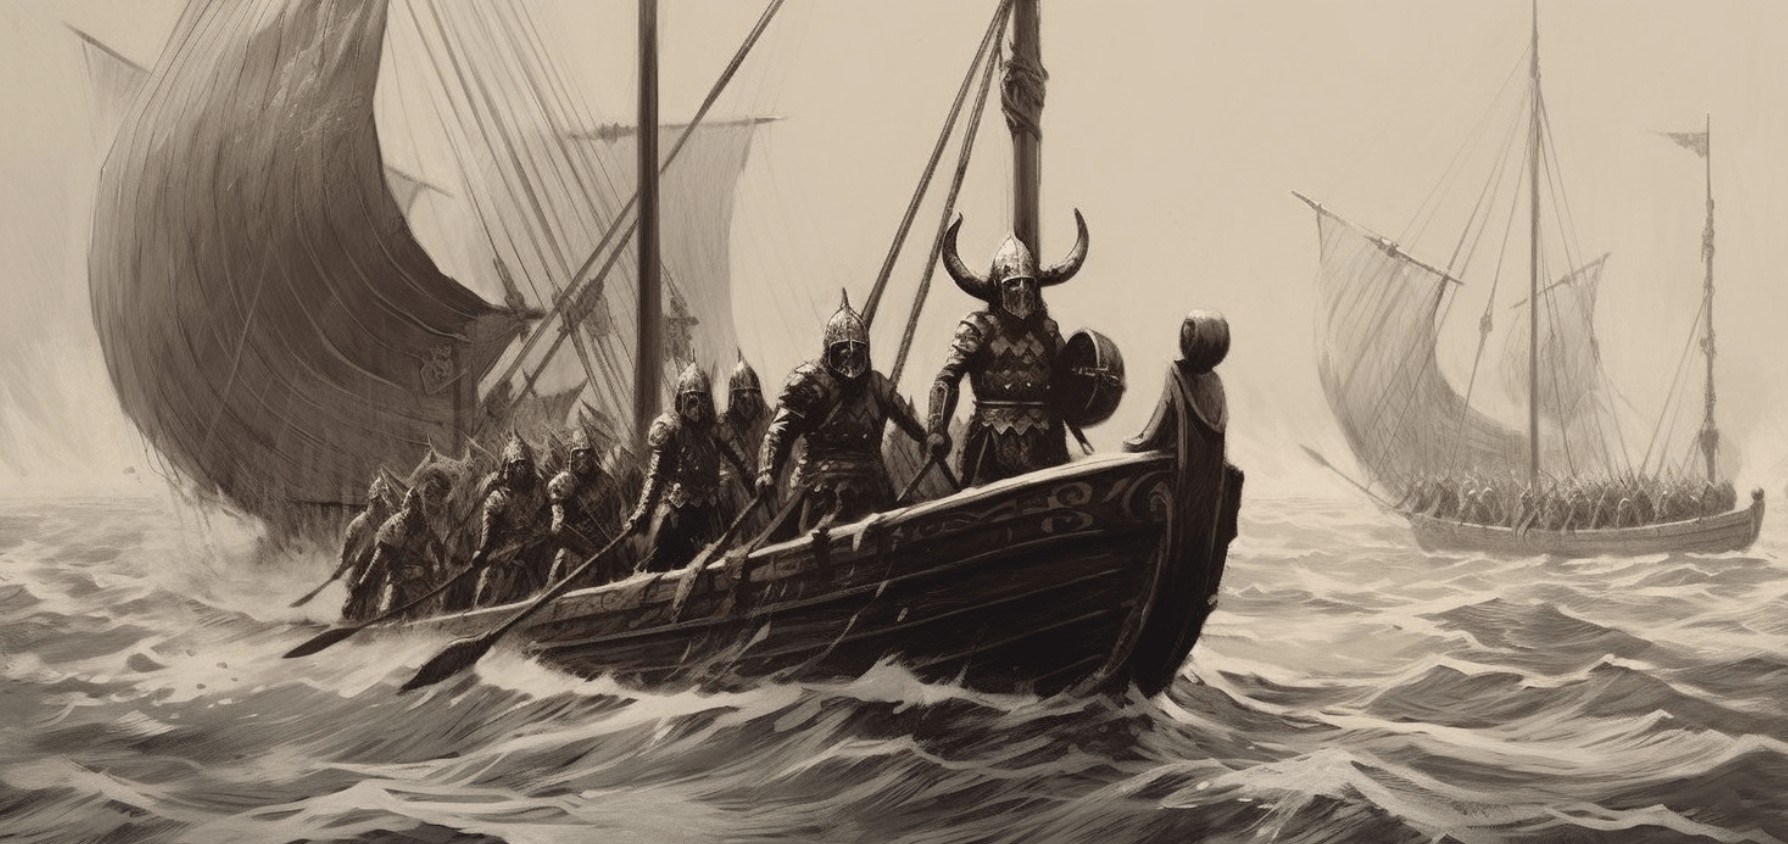 viking drawings